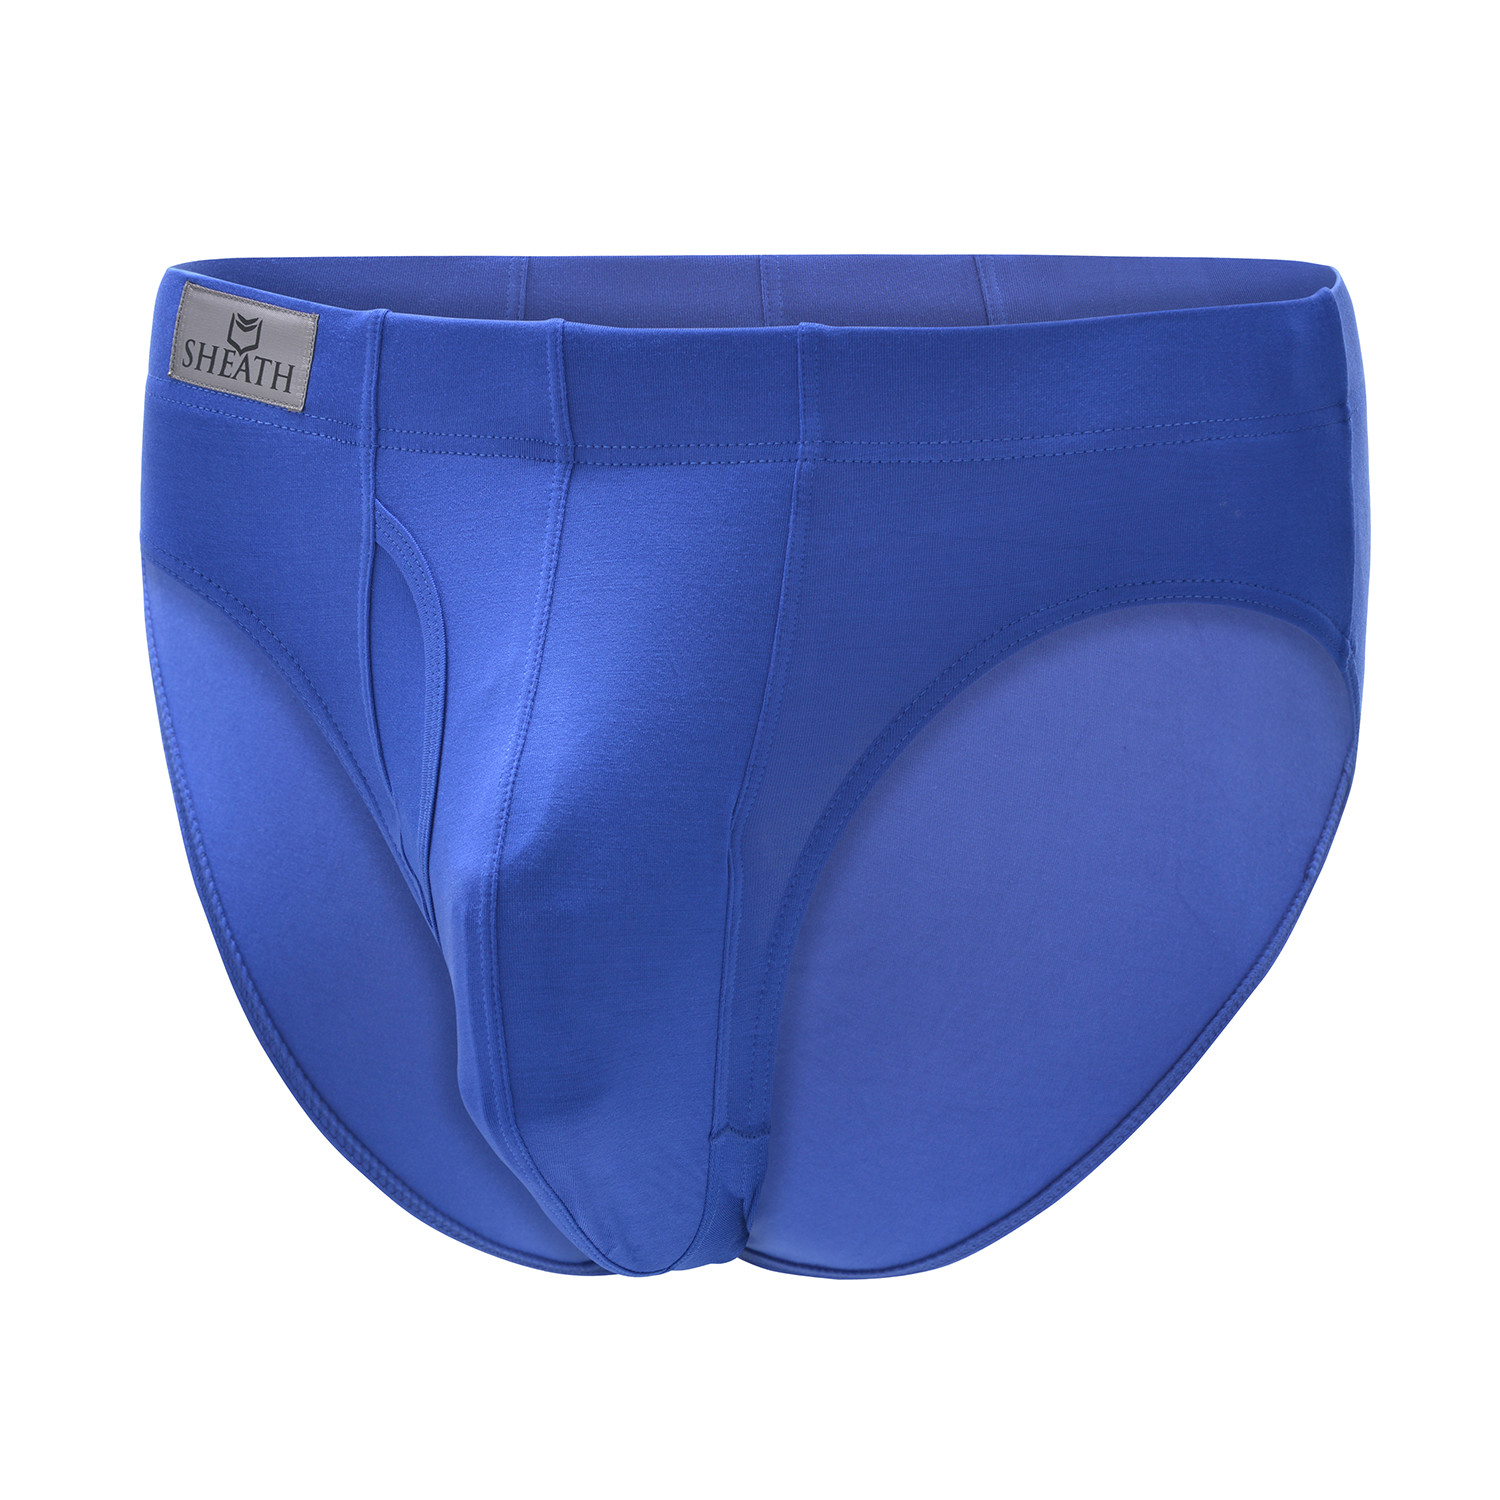 Sheath Briefs // Blue (Small) - Sheath Underwear - Touch of Modern